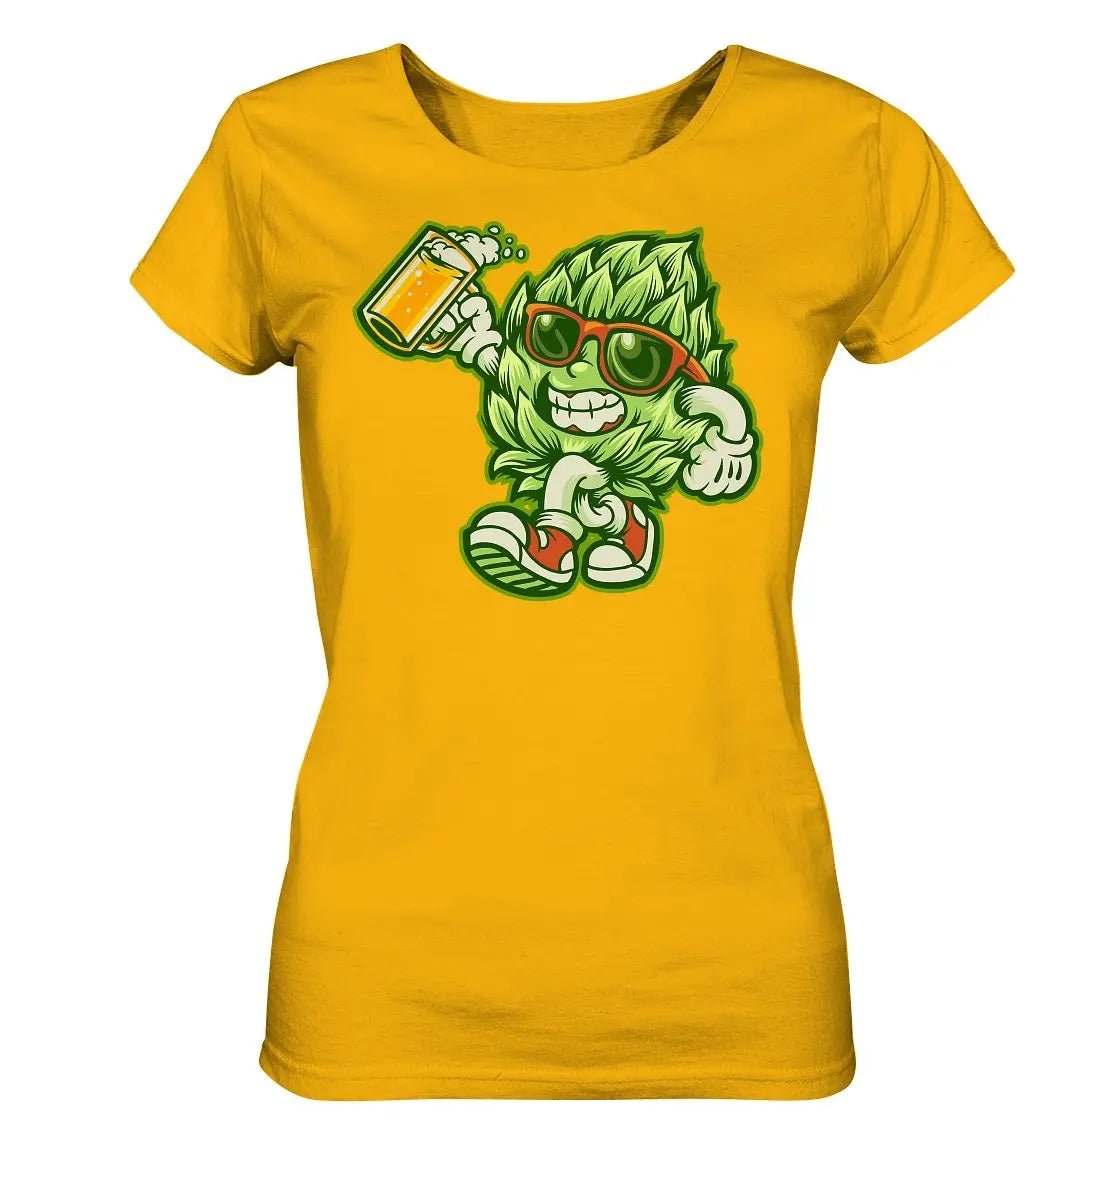 Ein Happy Hop - Damen-Bio-T-Shirt von Hoppymerch mit dem Bild einer Frau, die ein Bier in der Hand hält.